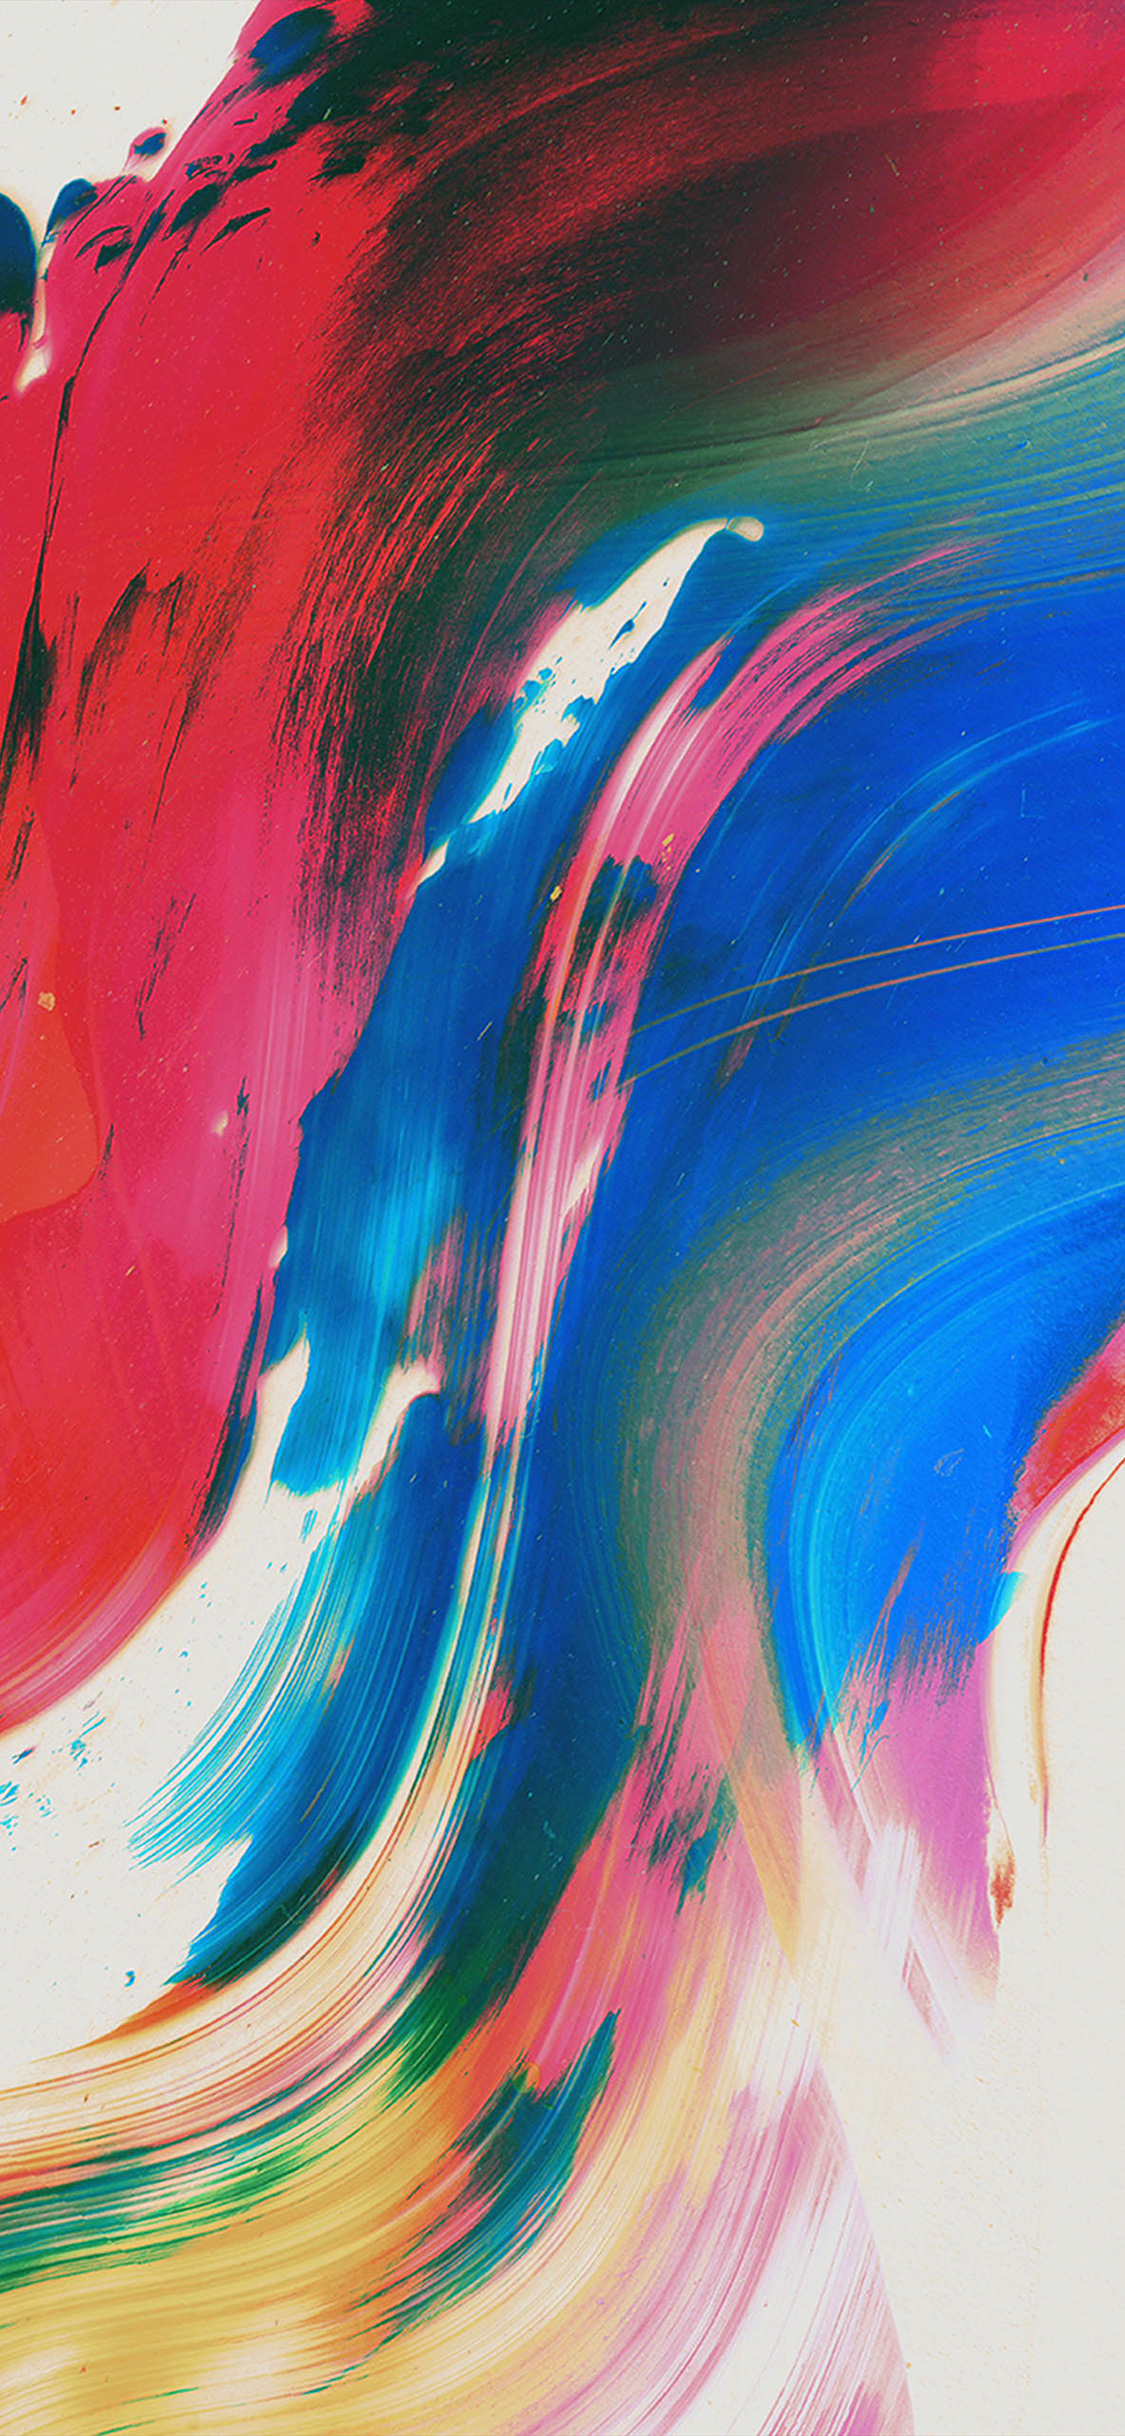 iPhone X wallpaper. paint texture art pattern color blue